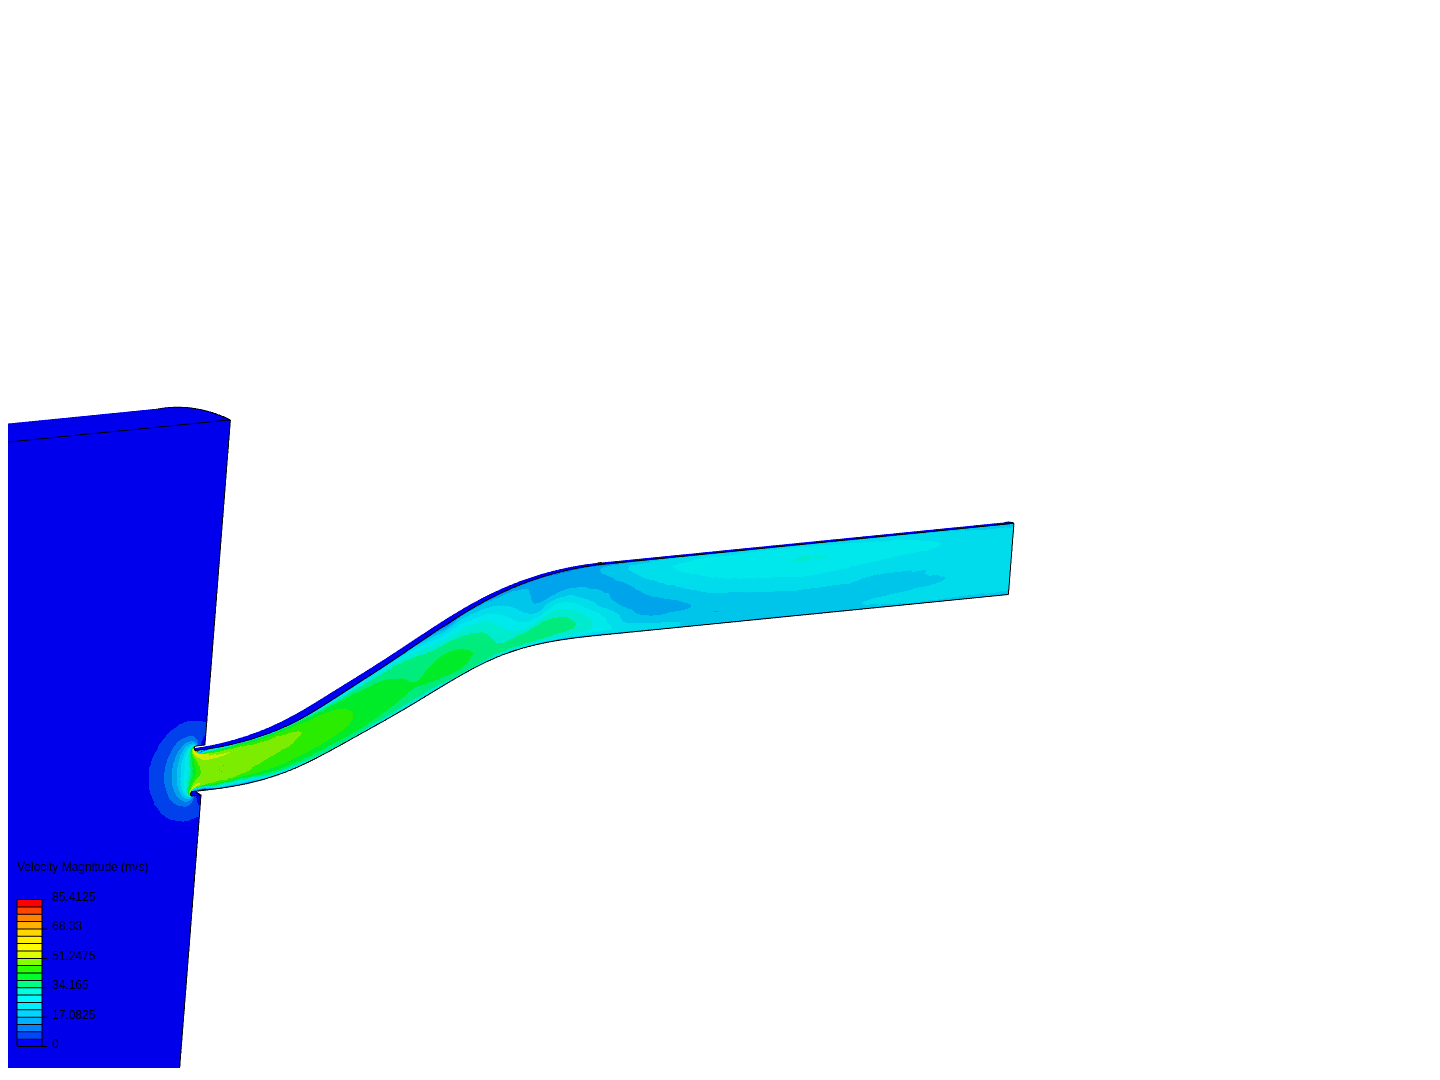 Base Model image